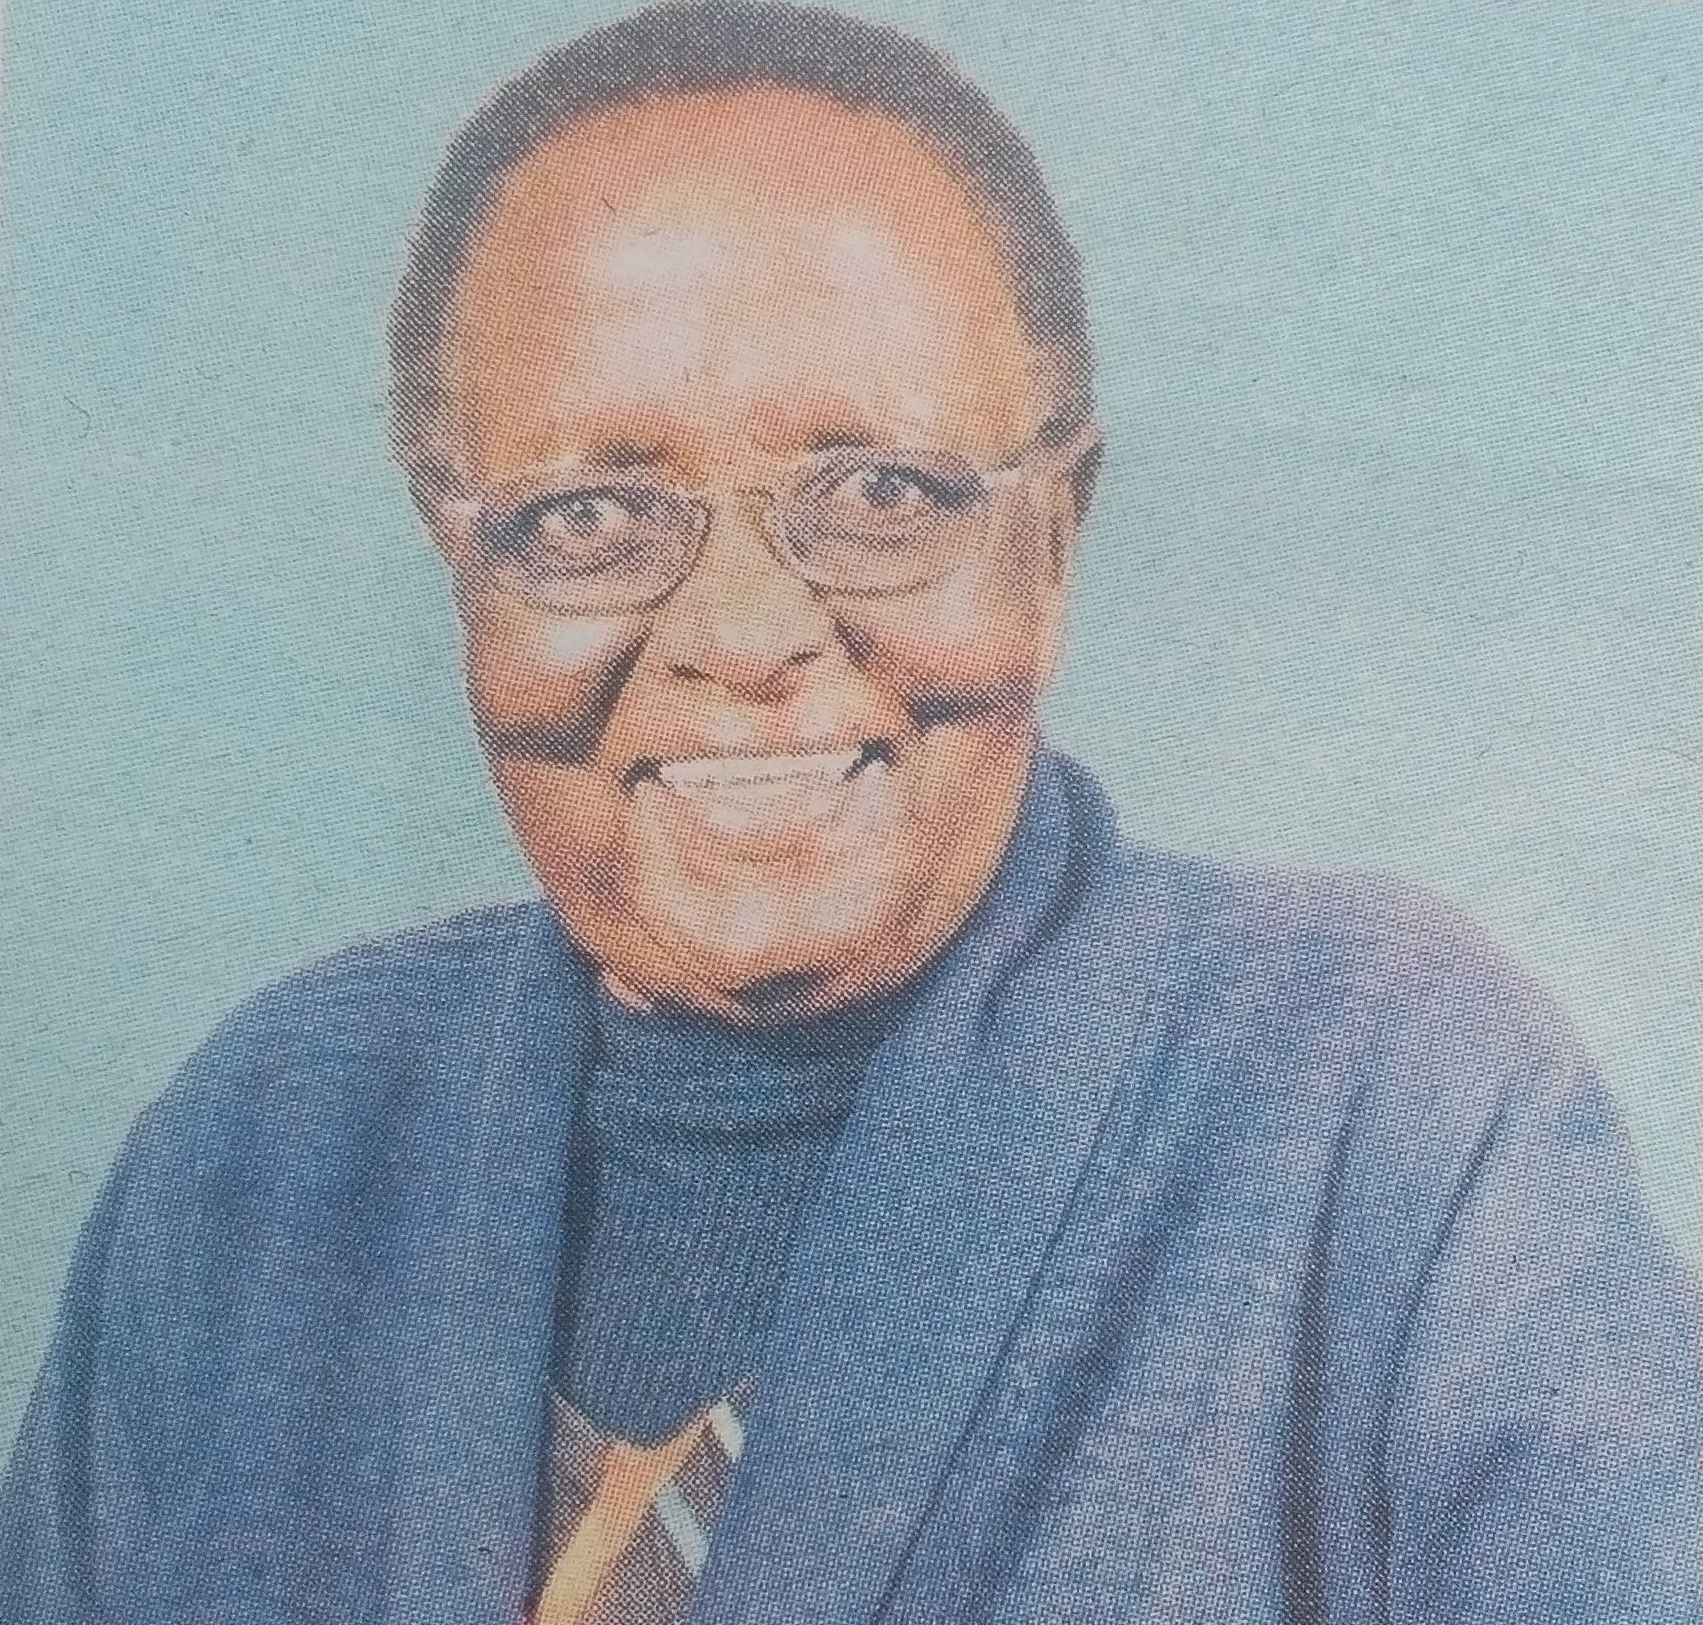 Obituary Image of Mama Forence Tirindi Mbogori